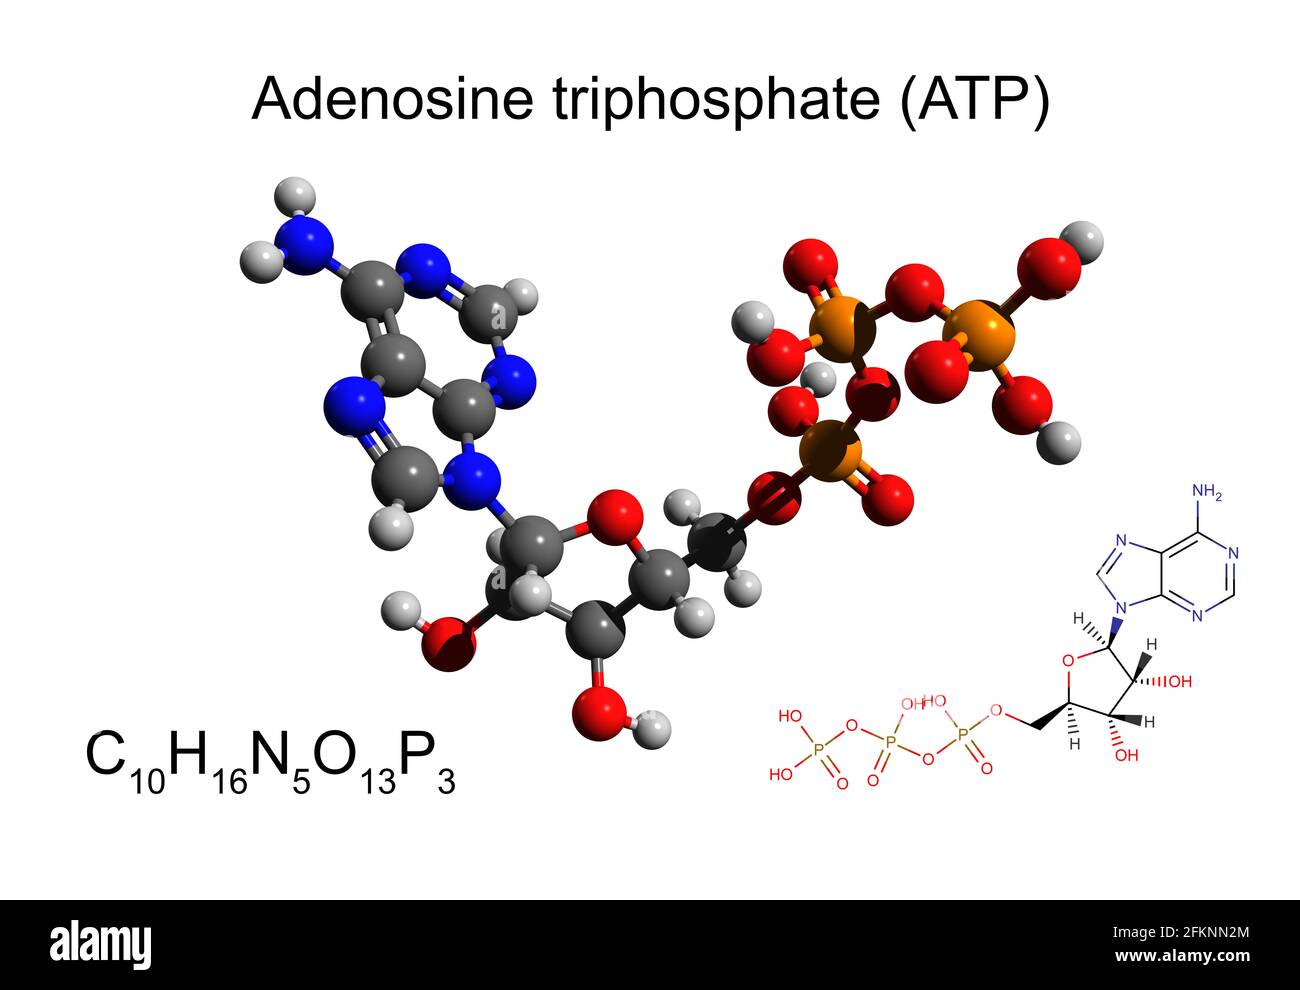 Formule chimique, formule squelettique et modèle 3D boule-et-bâton de l'adénosine triphosphate (ATP), fond blanc Banque D'Images